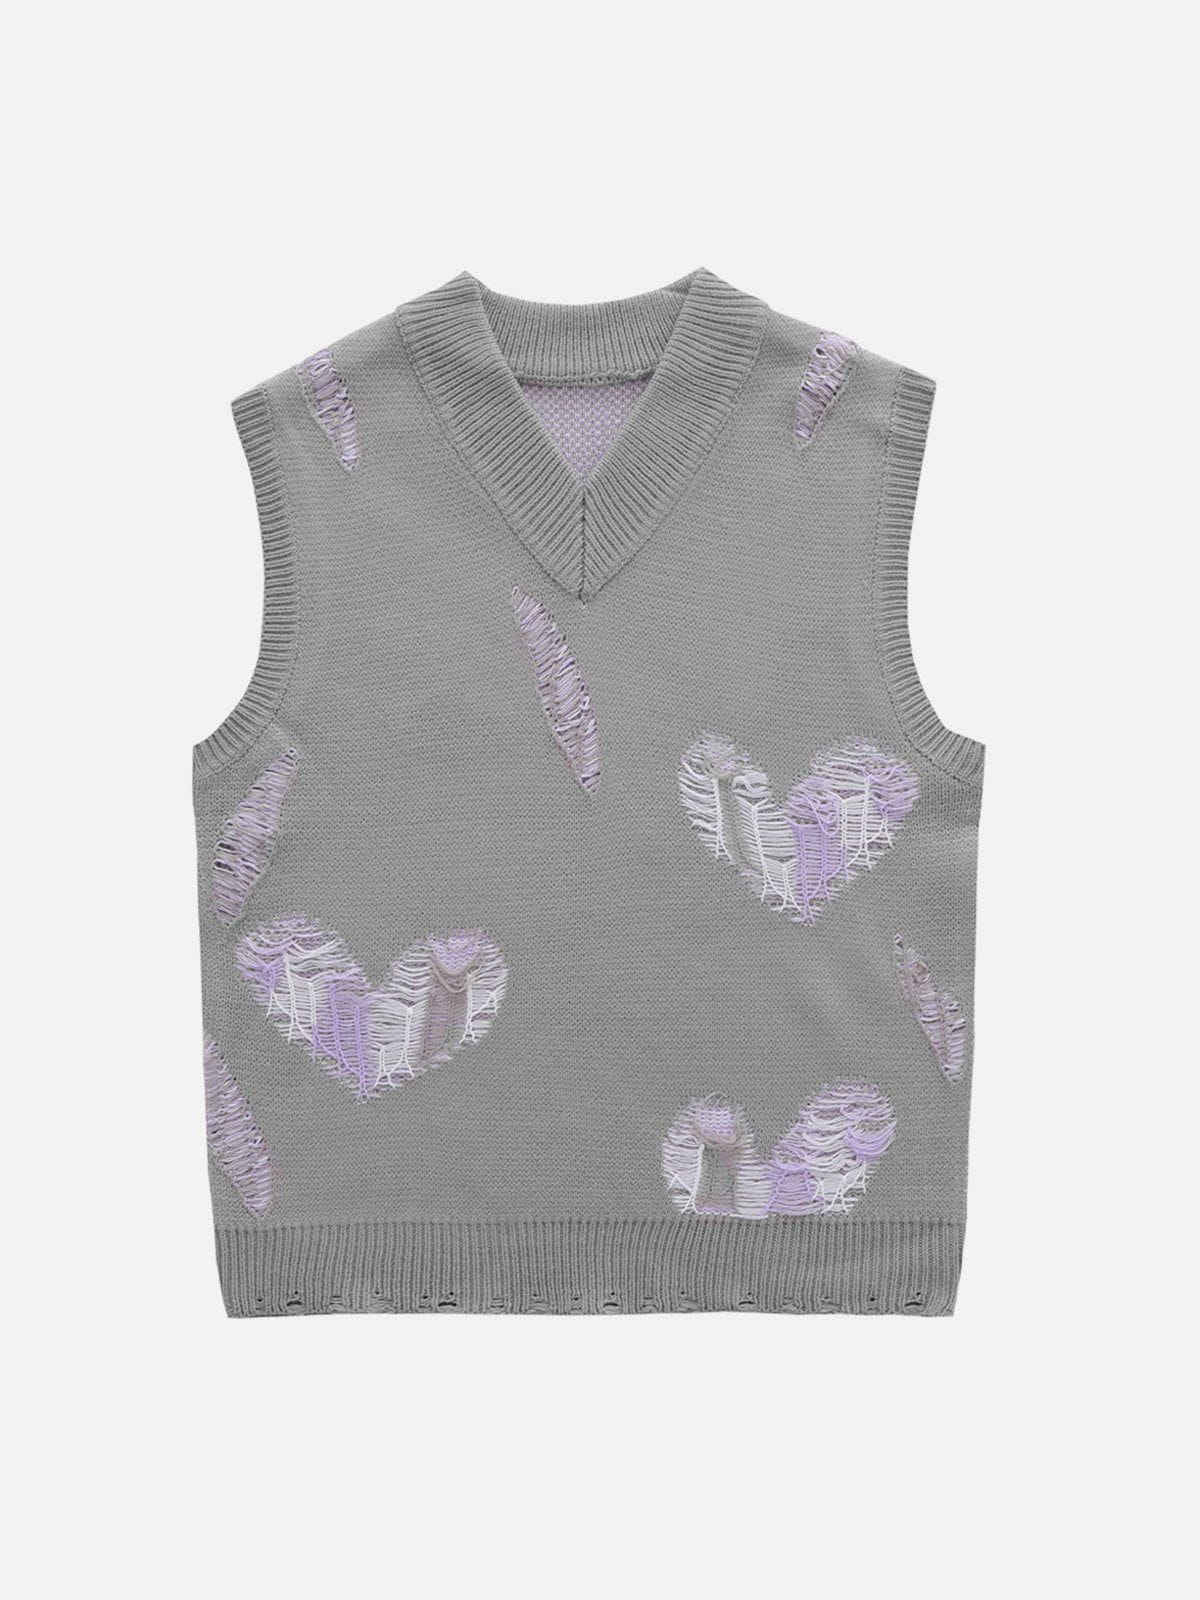 Eprezzy® - Love Embroidery Sweater Vest Streetwear Fashion - eprezzy.com